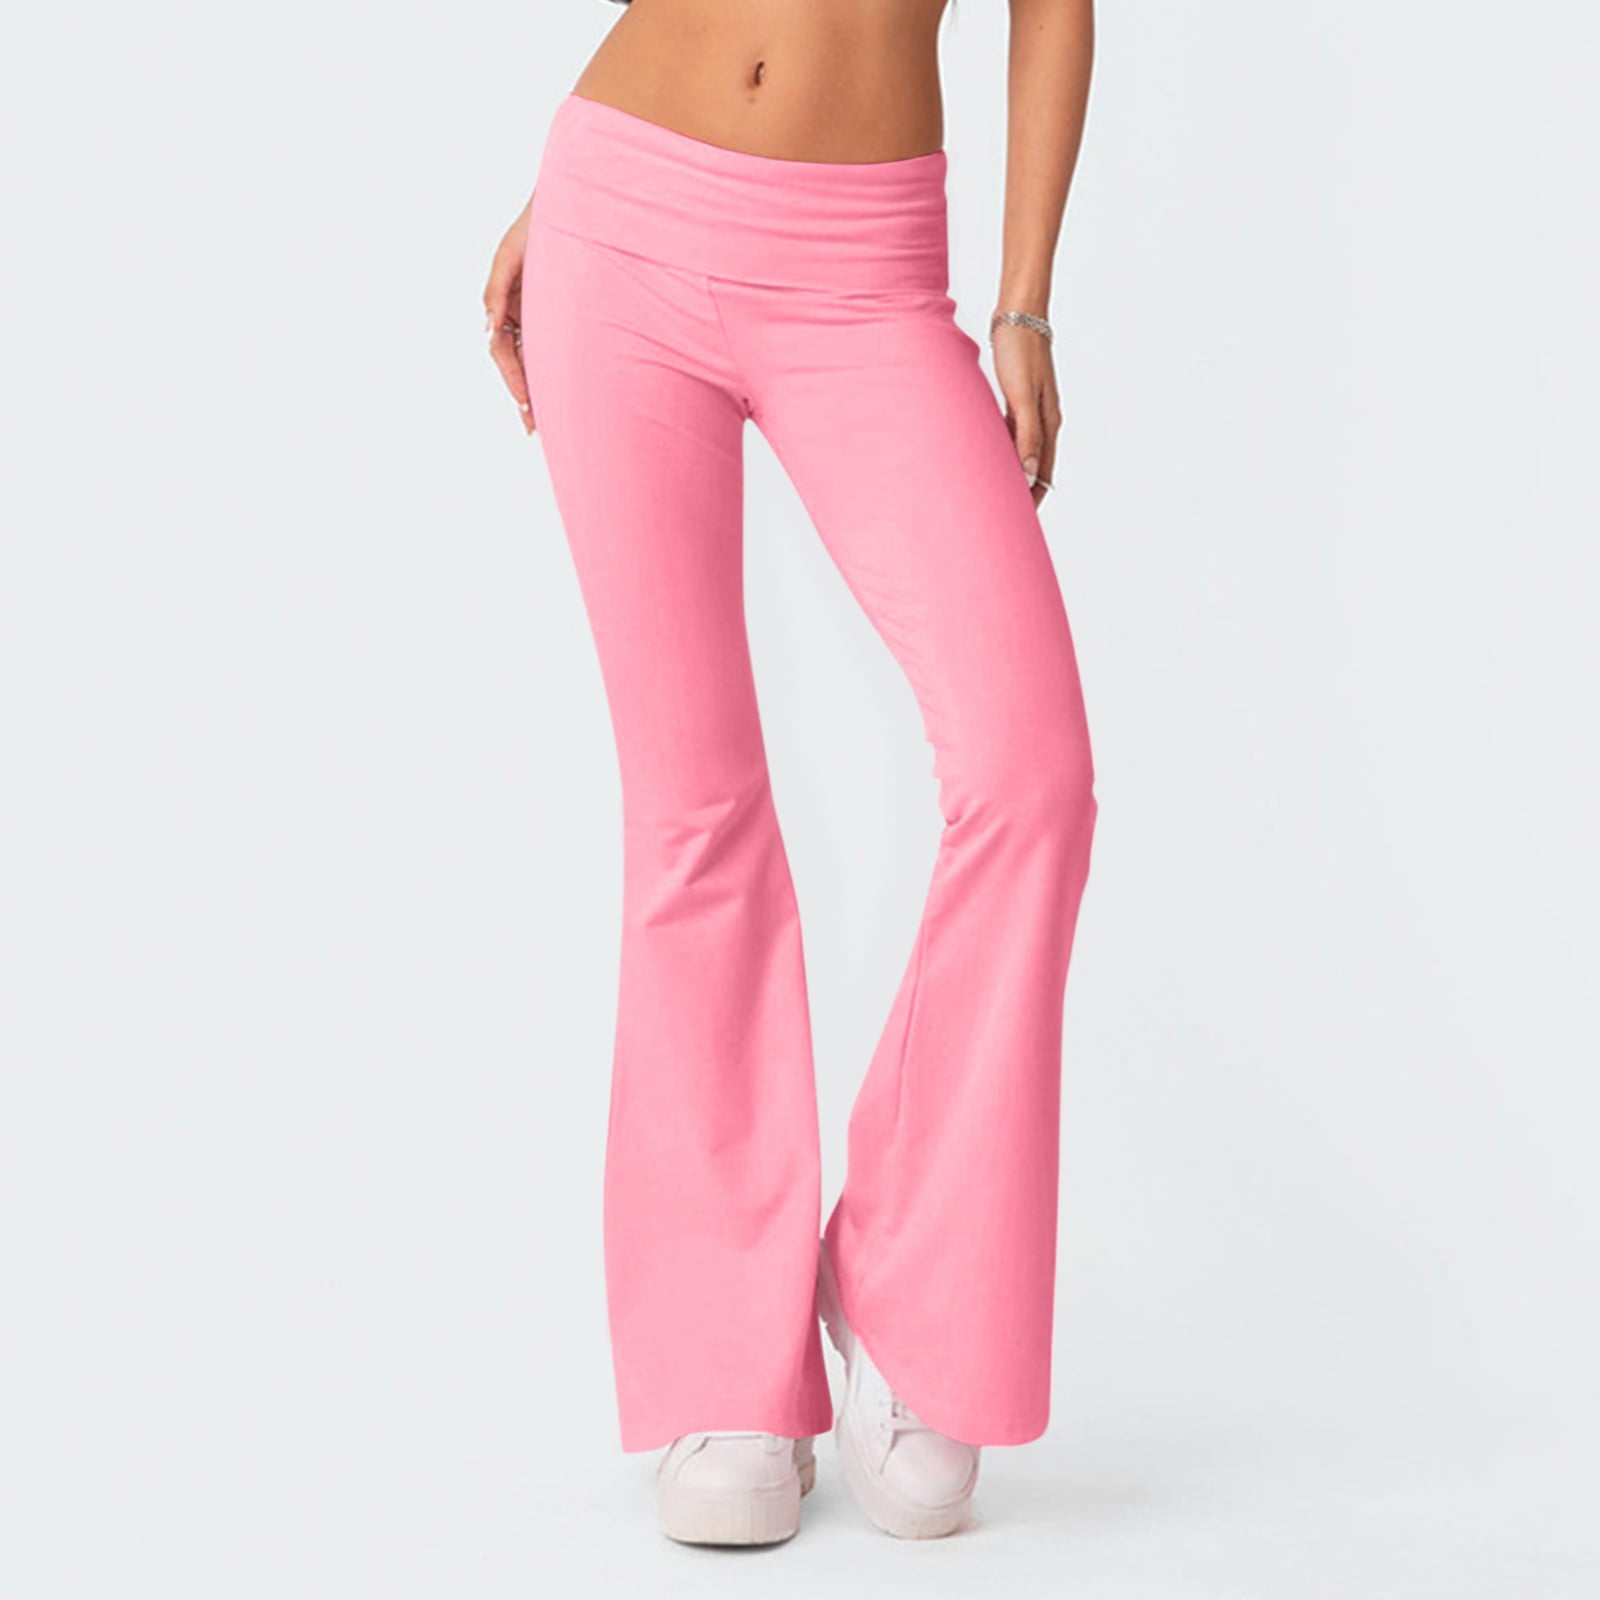 Back In-Stock! High Rise Super Flare Jeans - Barbie Pink – L B L